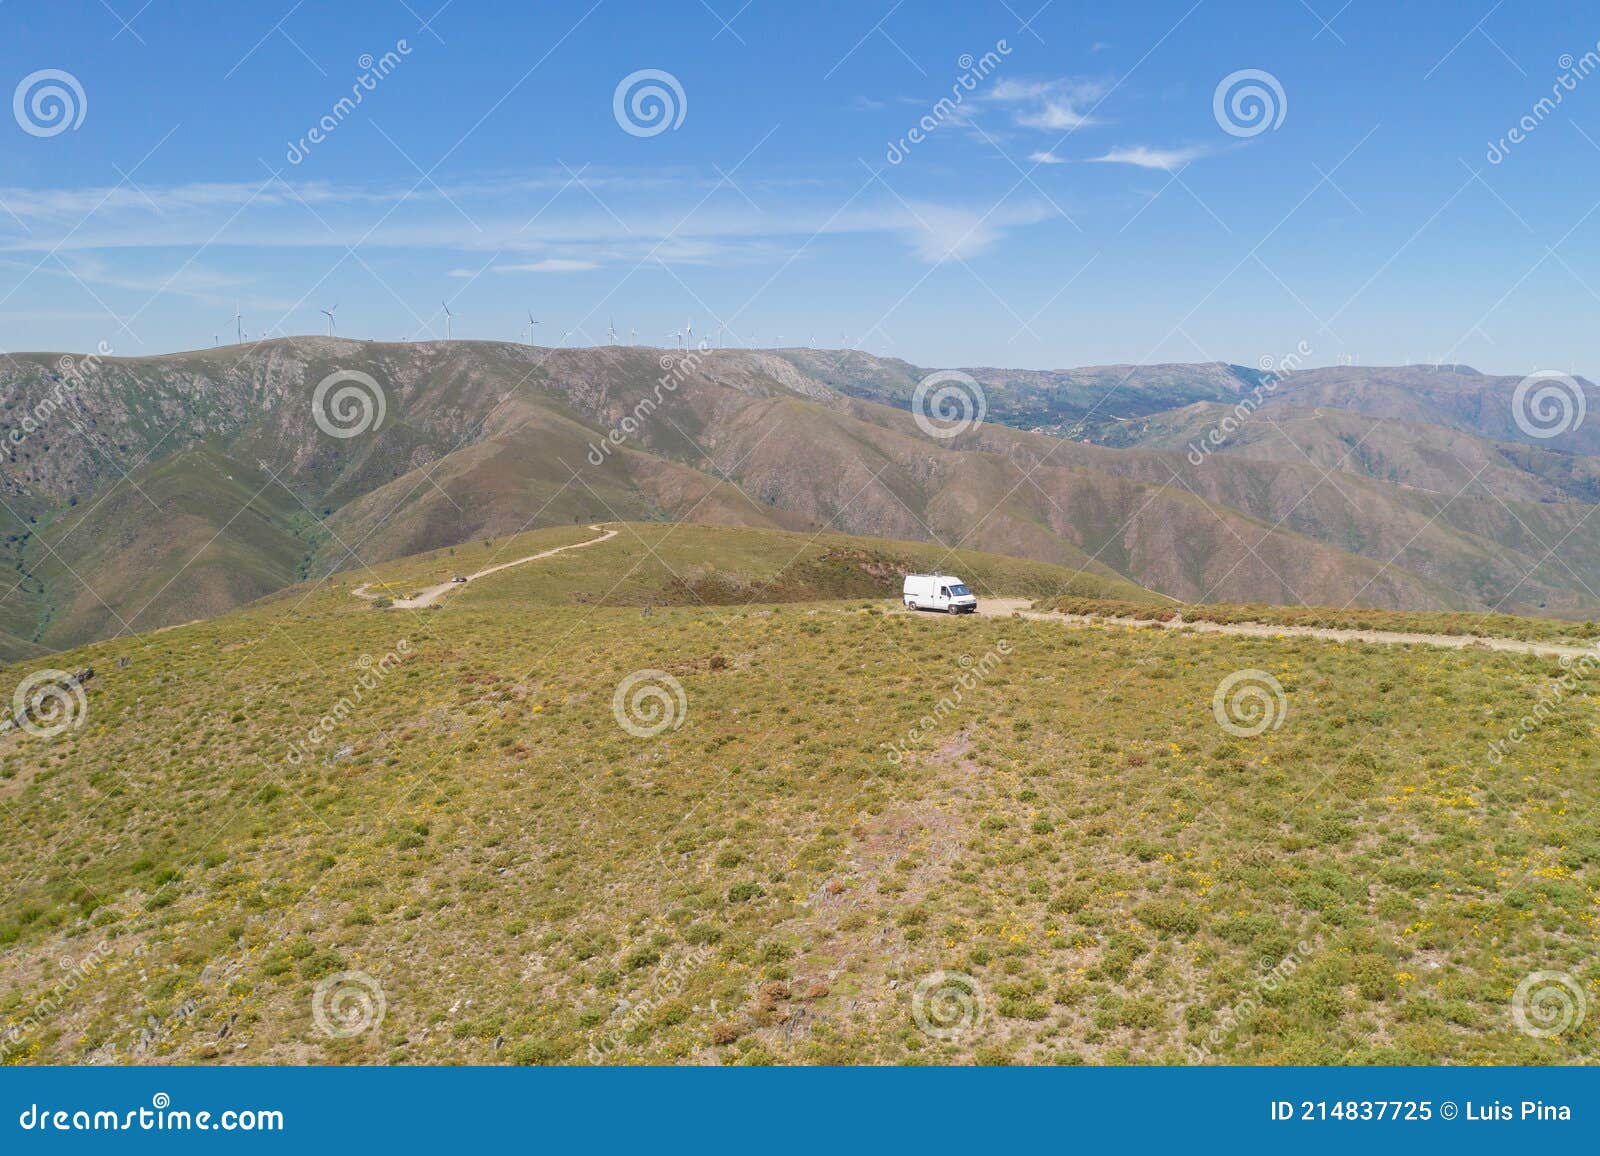 serra da freita drone aerial view of a camper van in arouca geopark on a road, in portugal